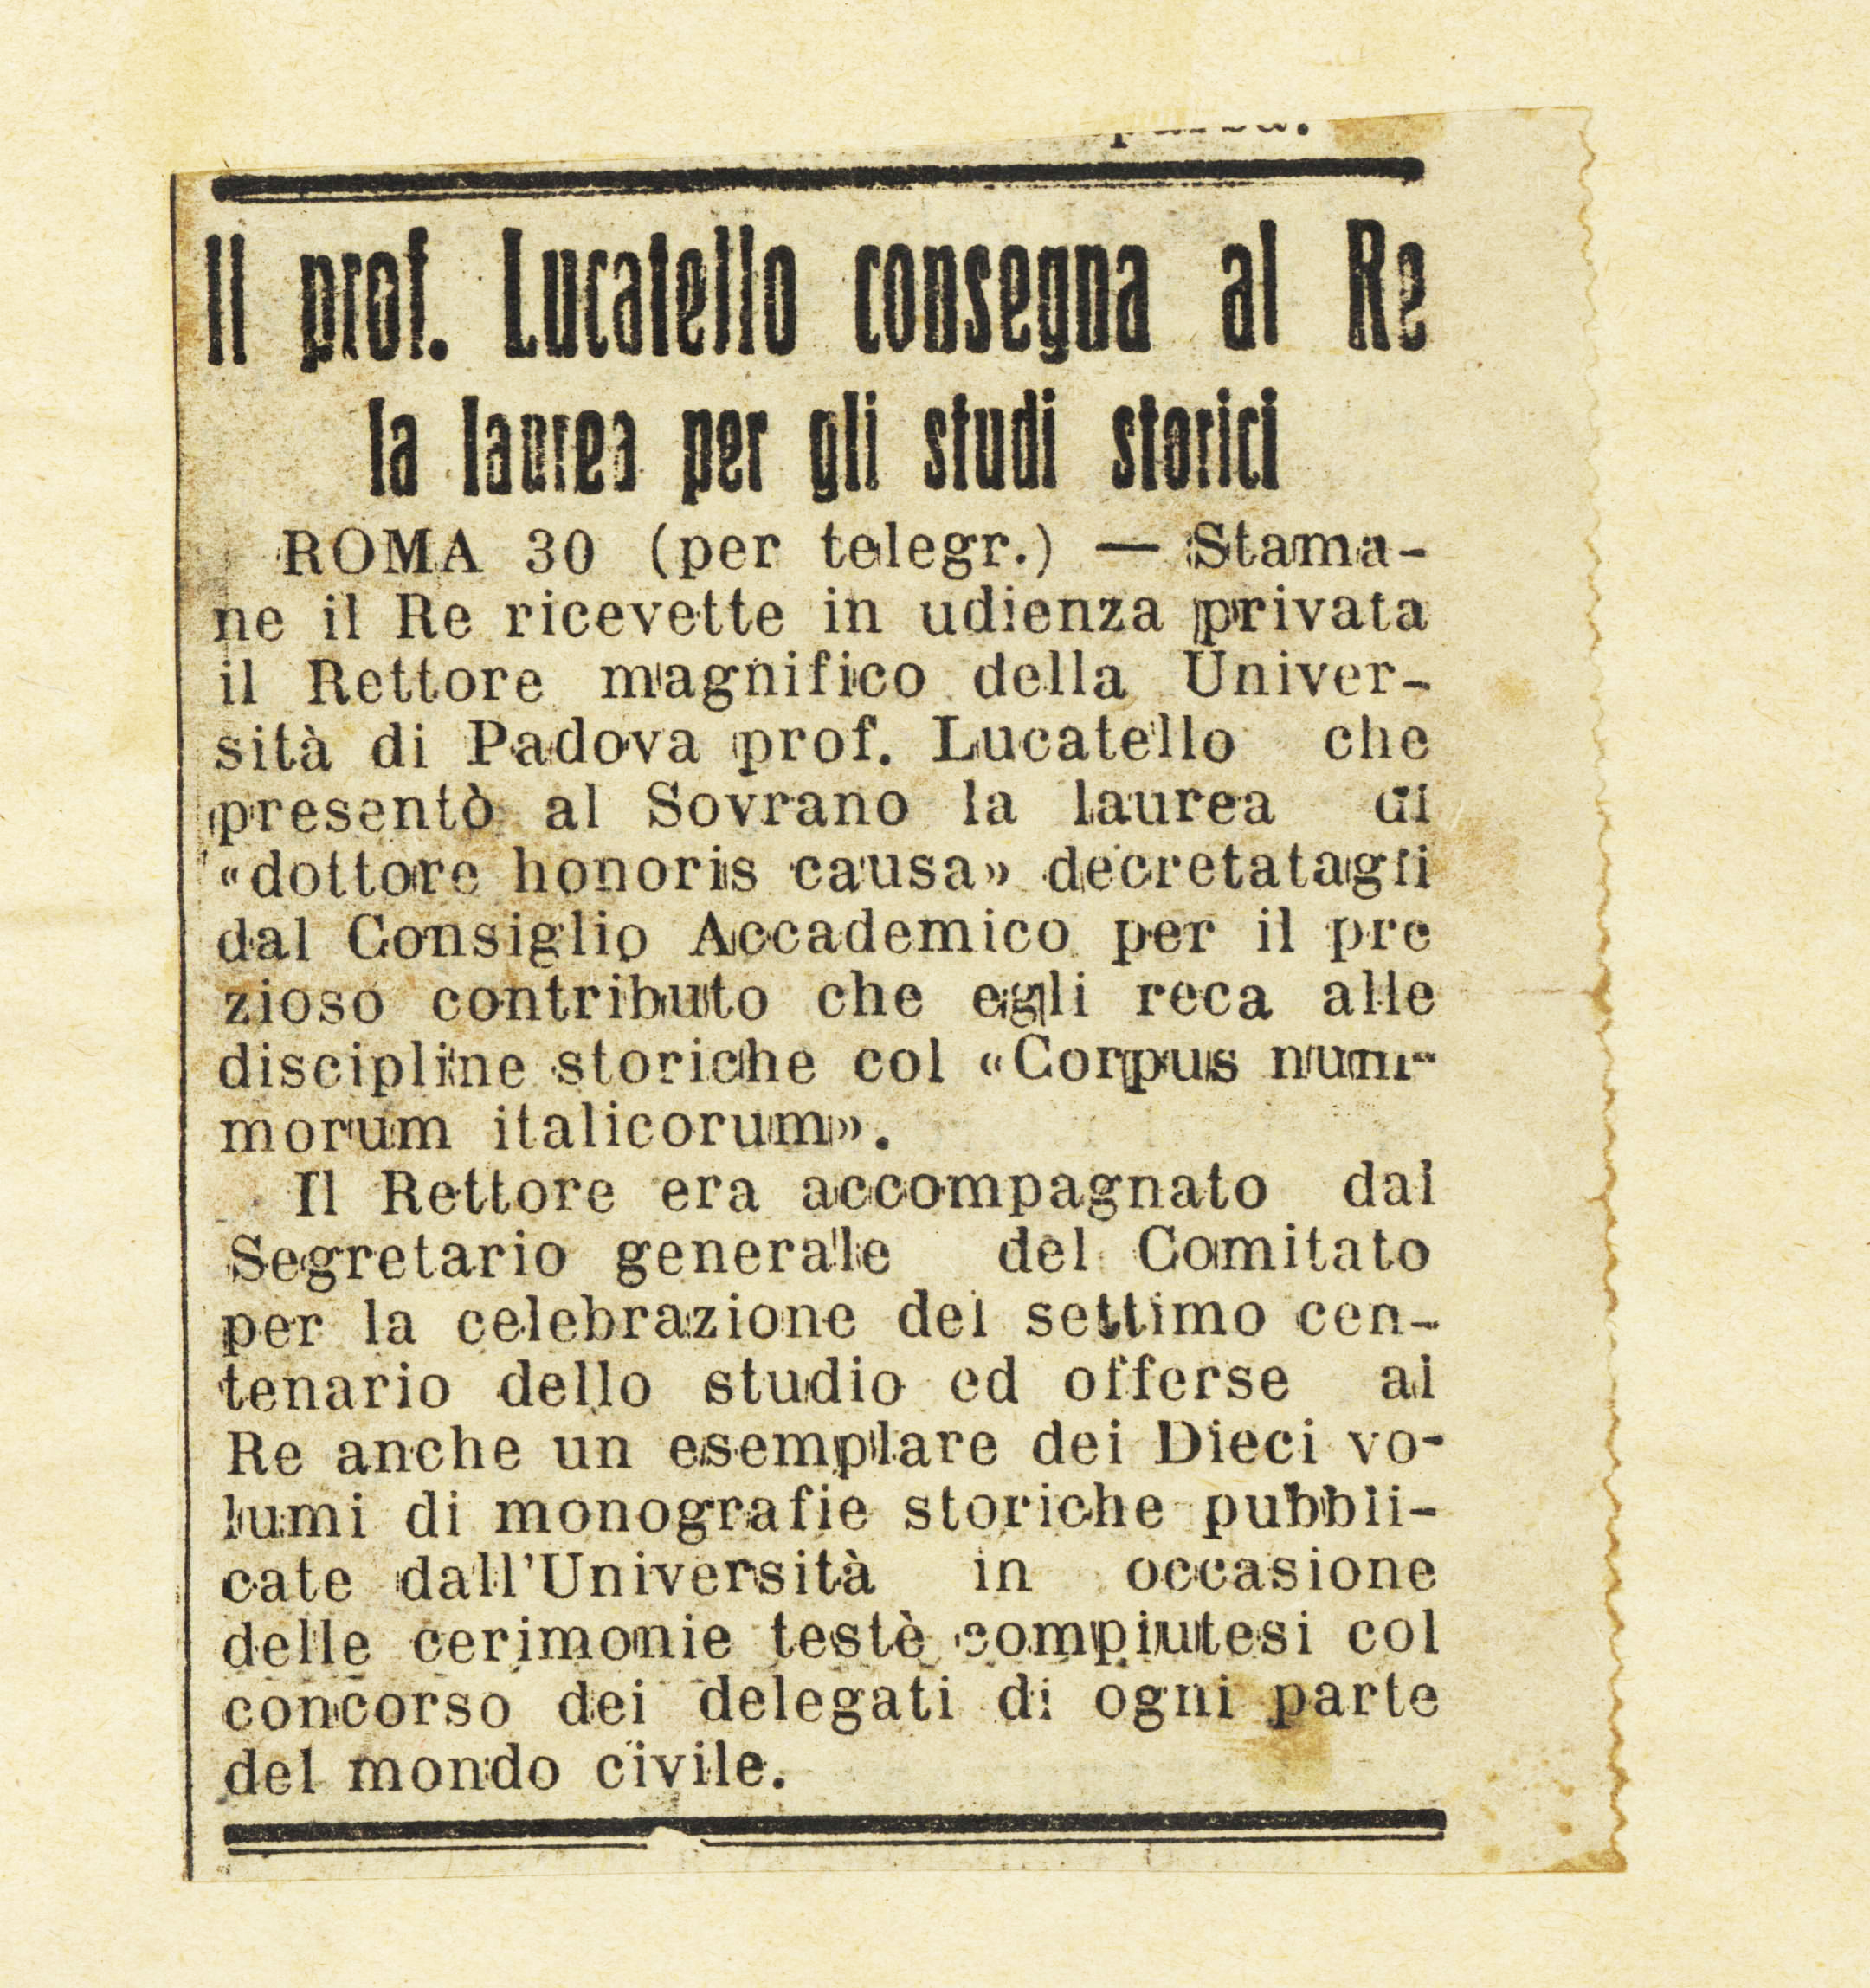 1922_05_31_IlGazzettino_Lucatello consegna al re la laureaper gli studi storici